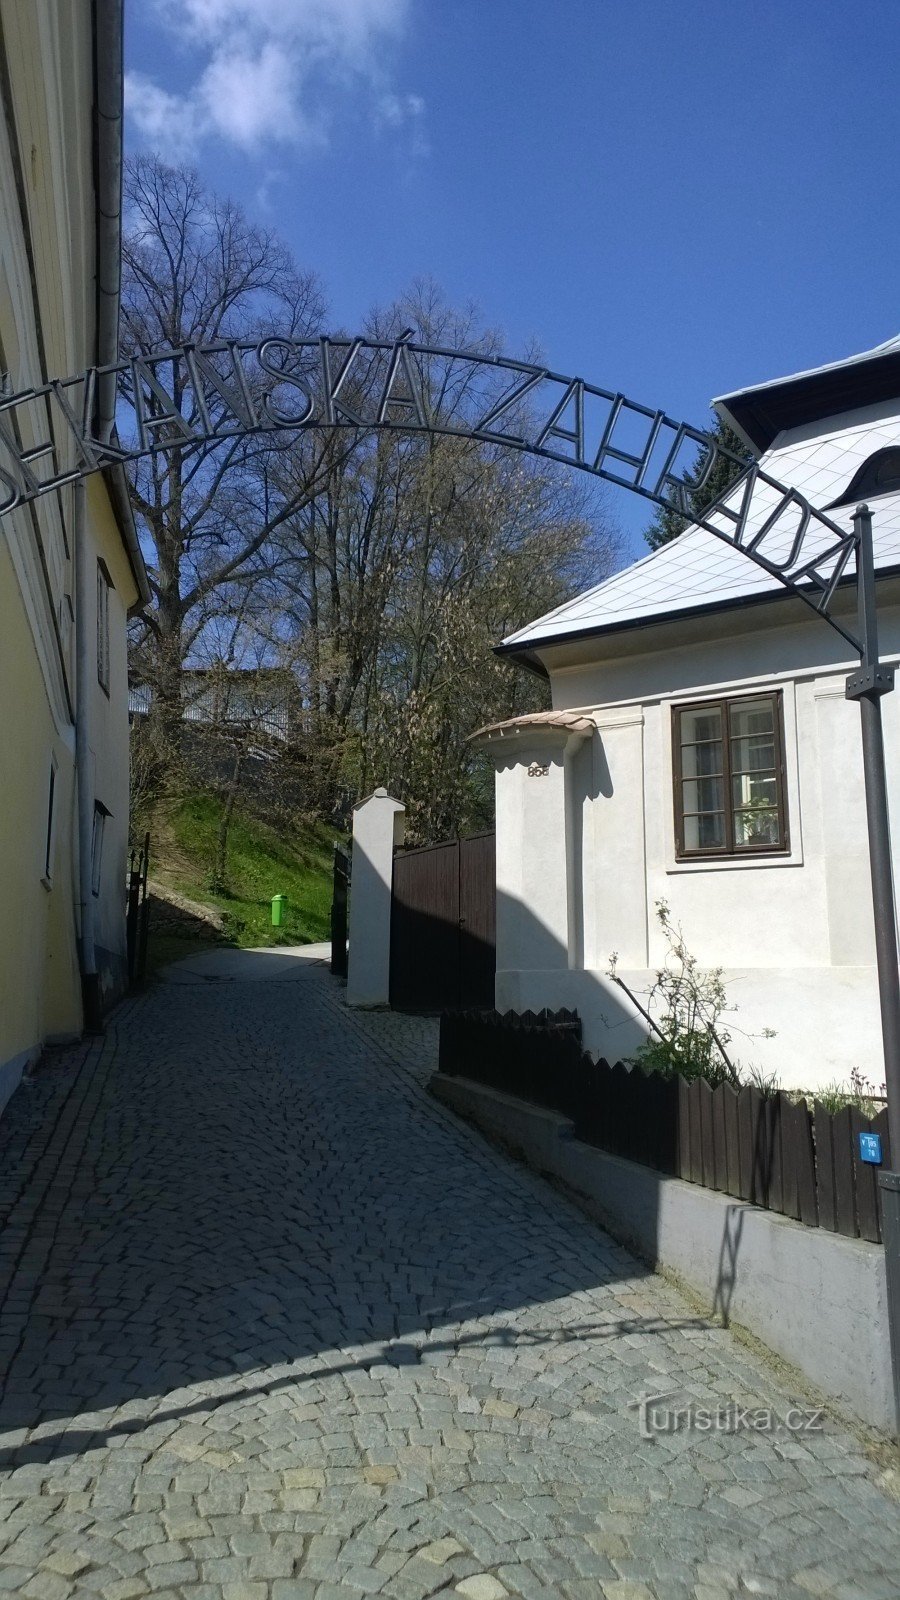 The dean's garden in Pelhřimov.